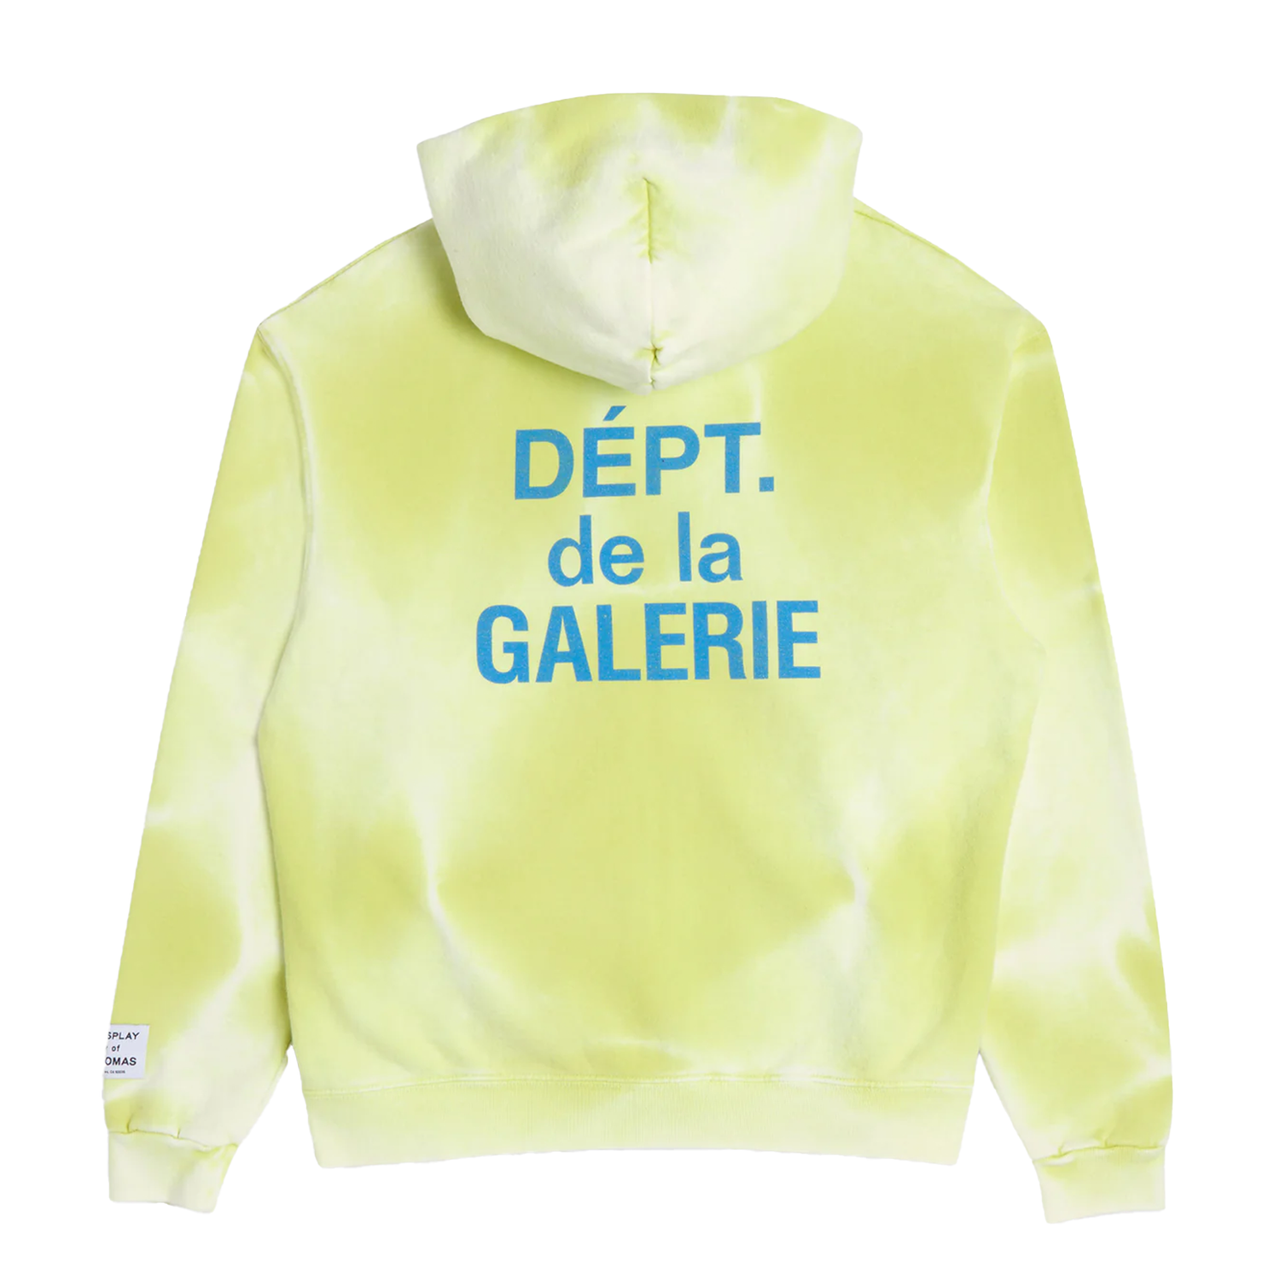 Gallery Dept. French Zip Sweatshirt Lime Green